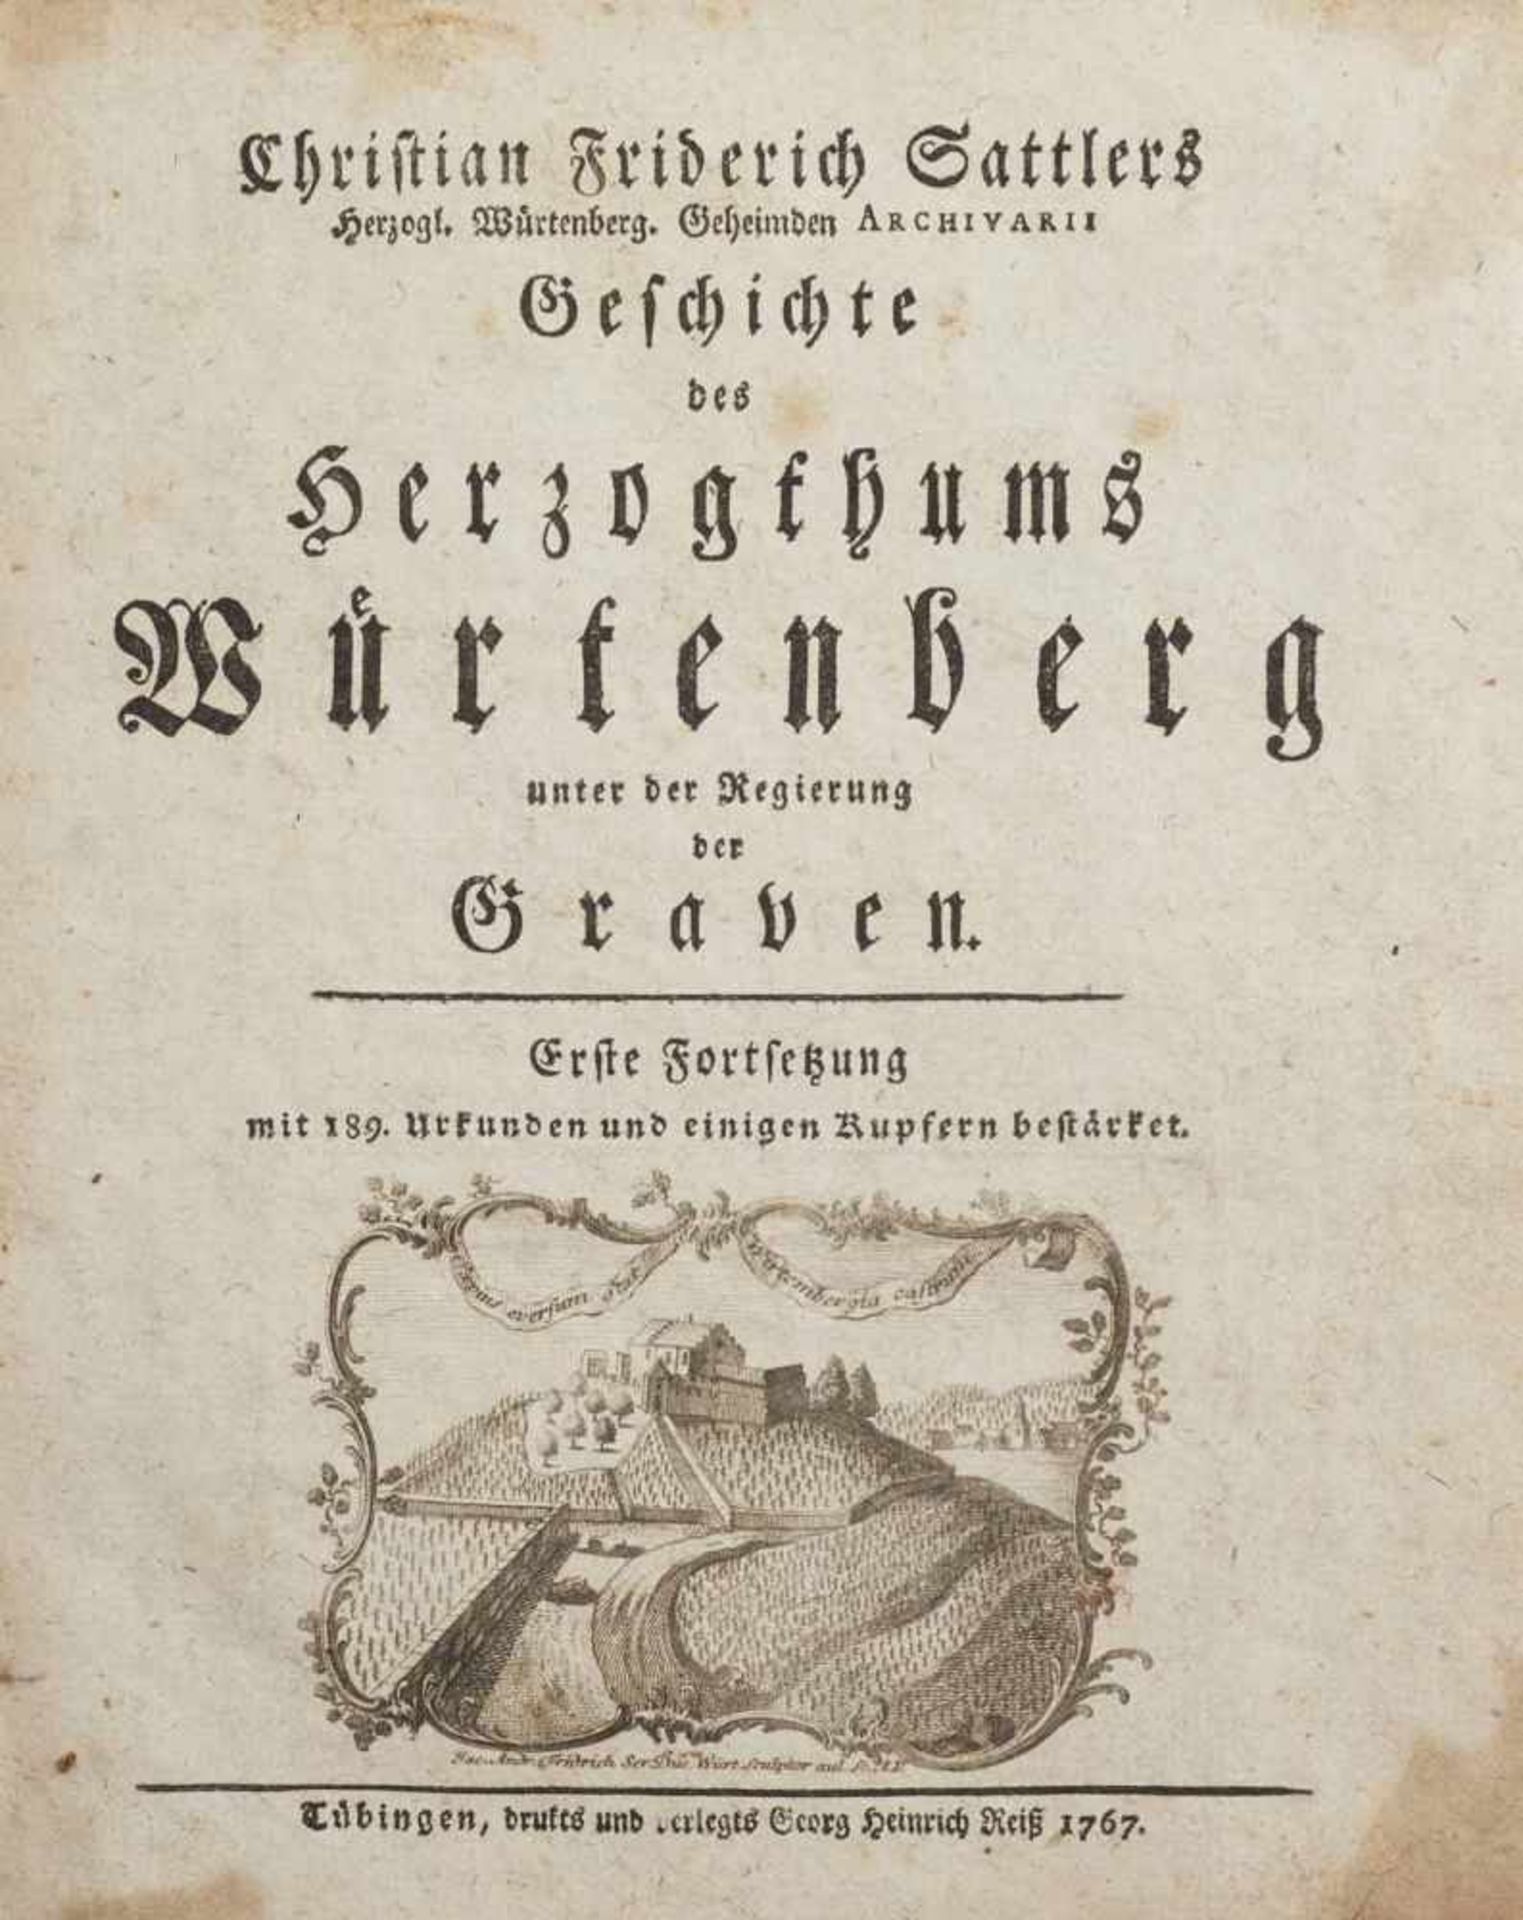 Sattler, Christian FriedrichStuttgart 1705 - 1785Geschichte des Herzogthums Würtenberg, Tübingen, - Image 5 of 6